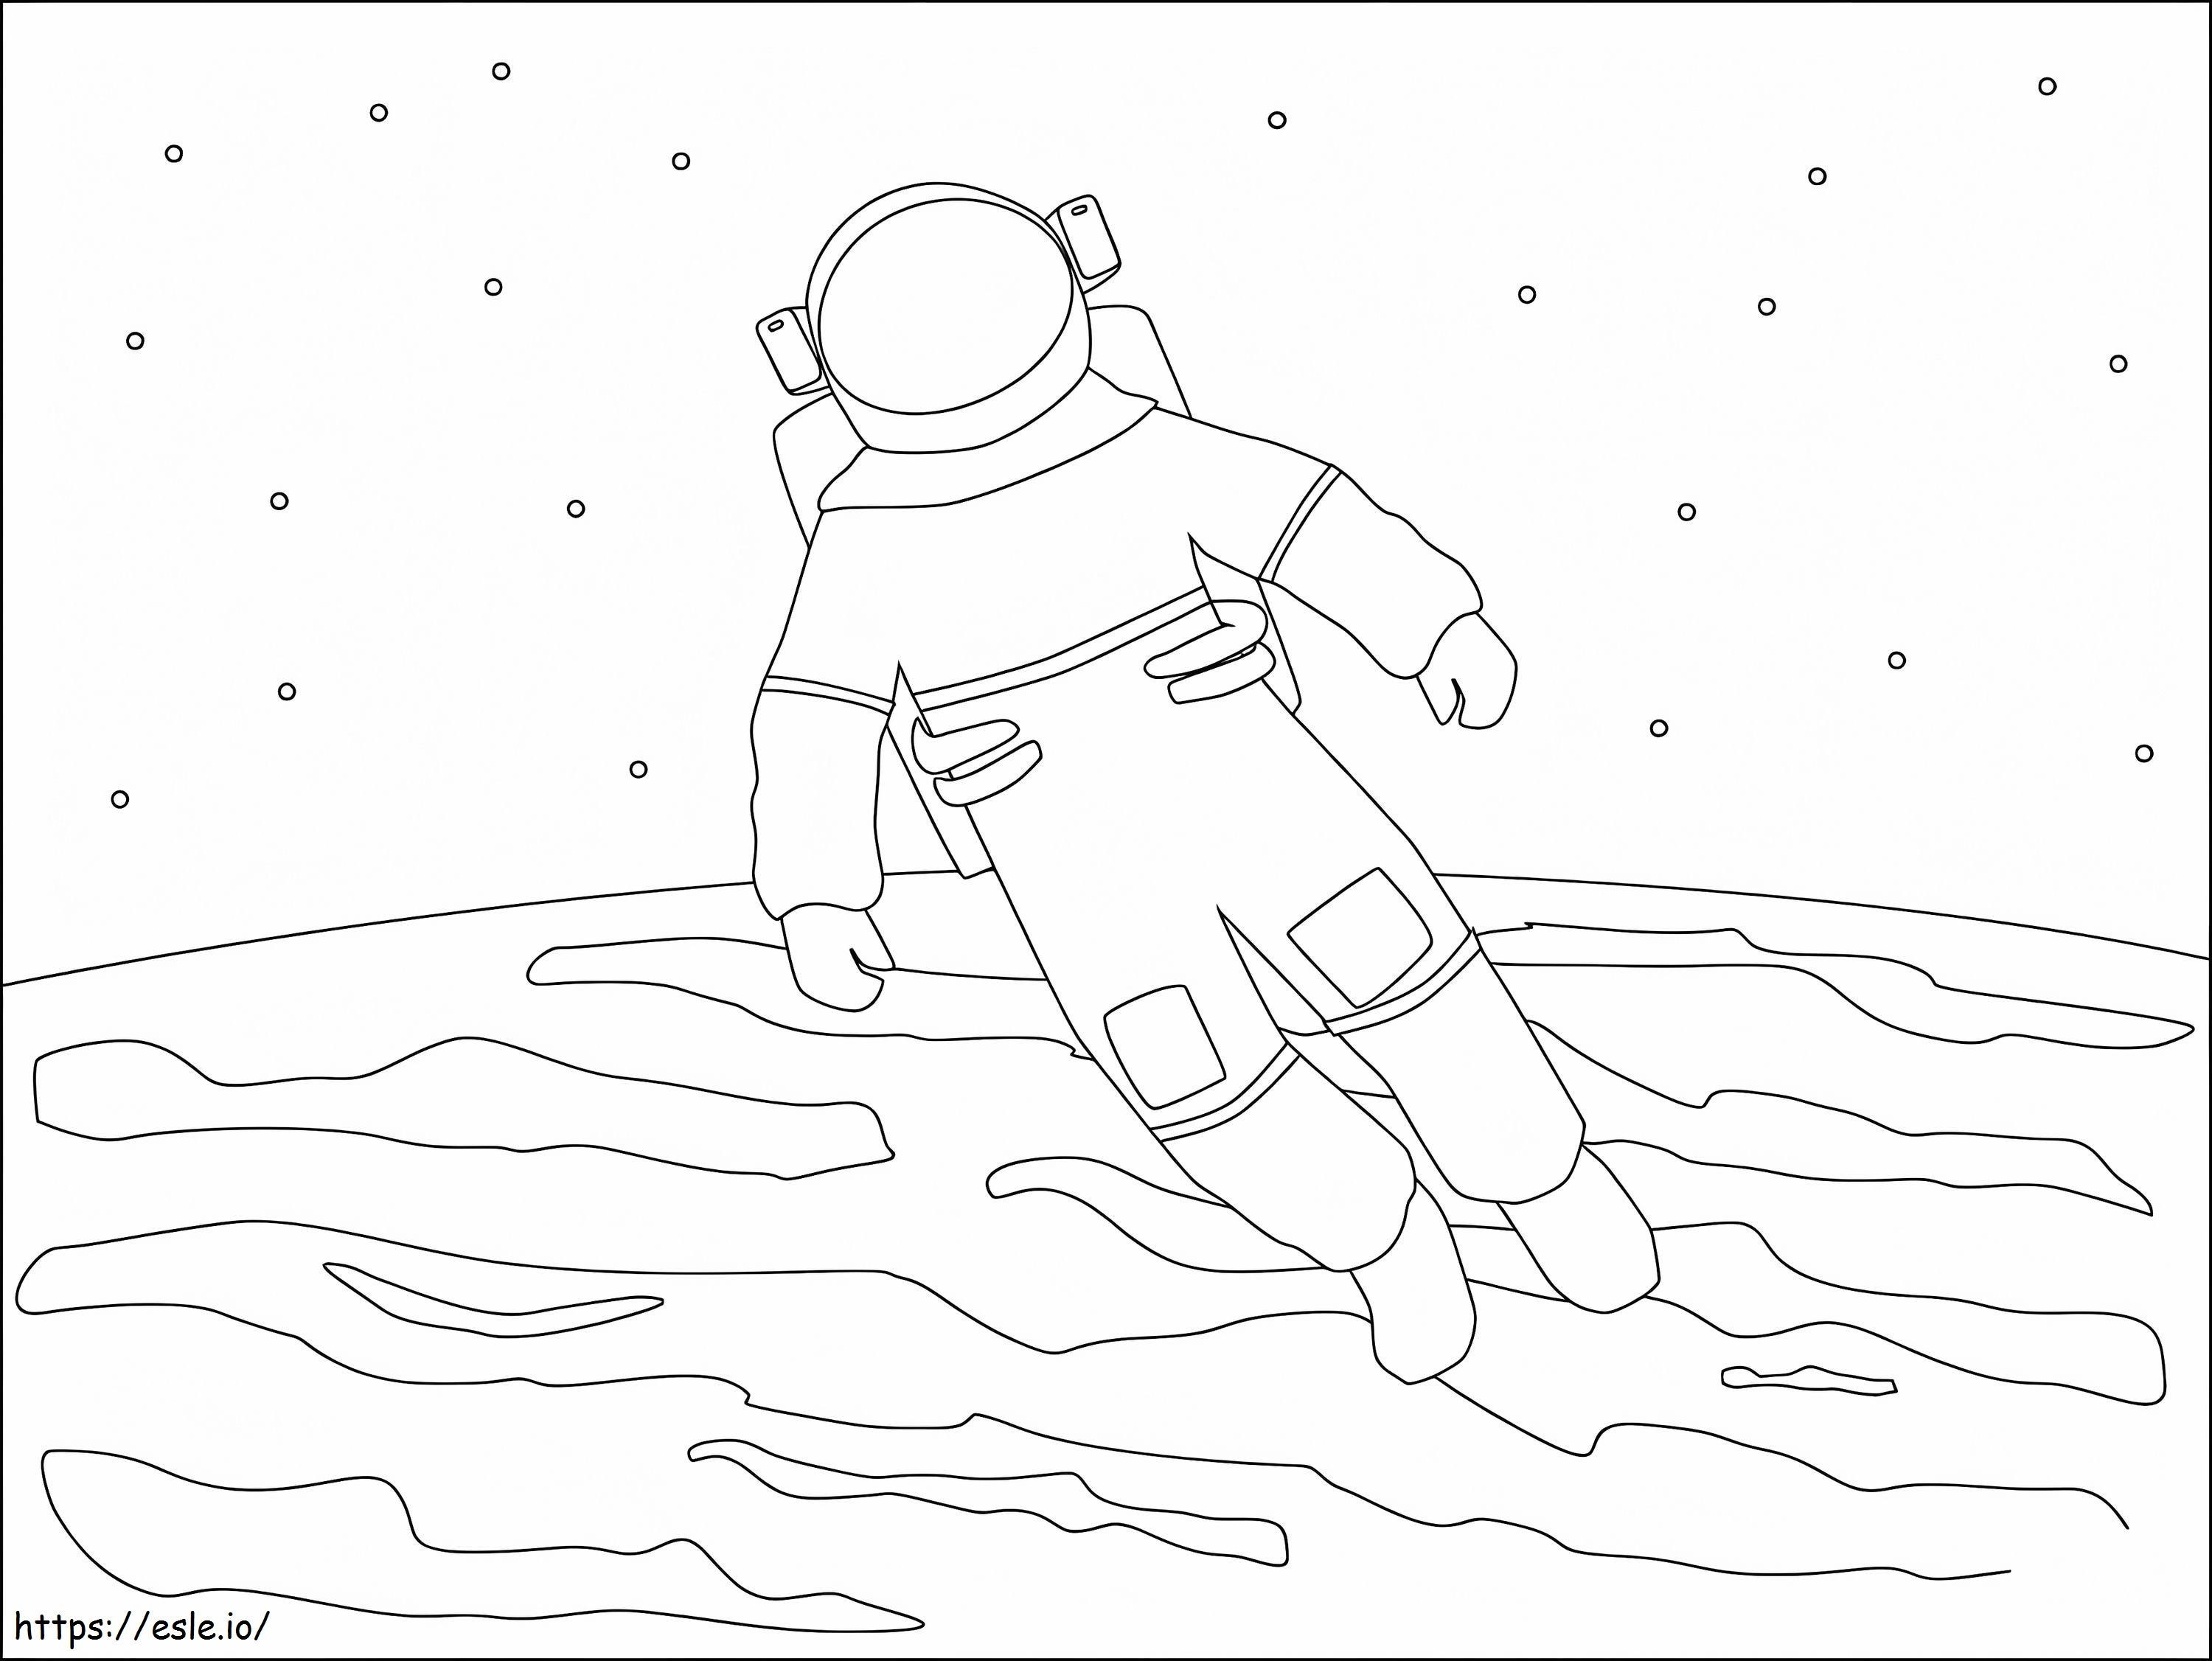 Astronaut plutind de colorat